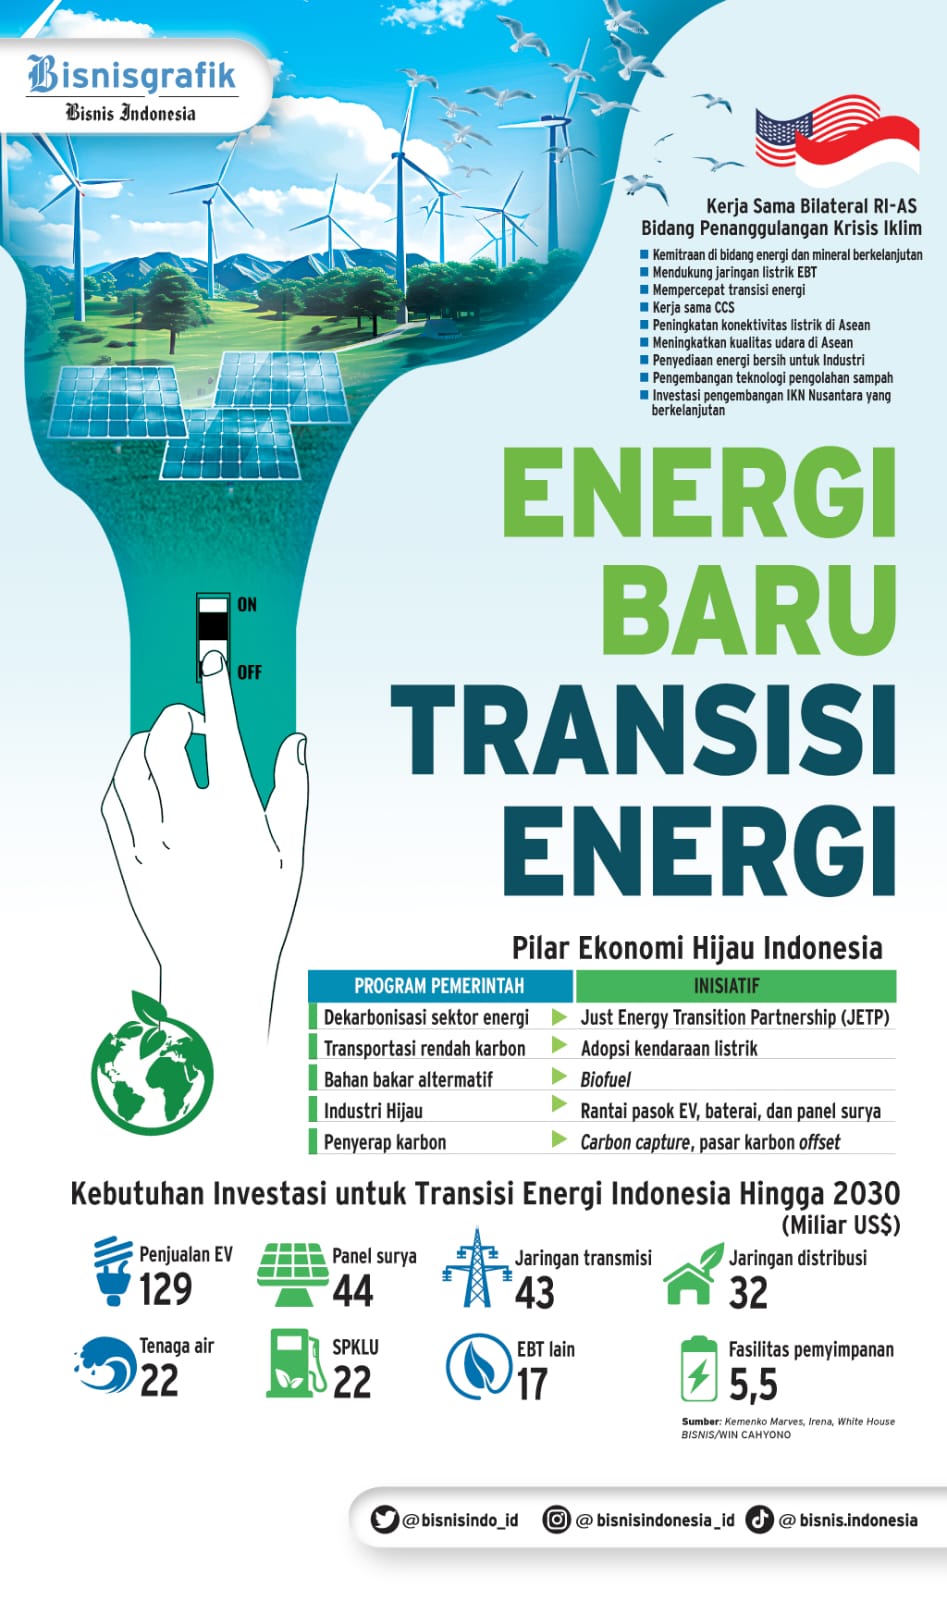  KOMITMEN INVESTASI : Energi Baru Transisi Energi